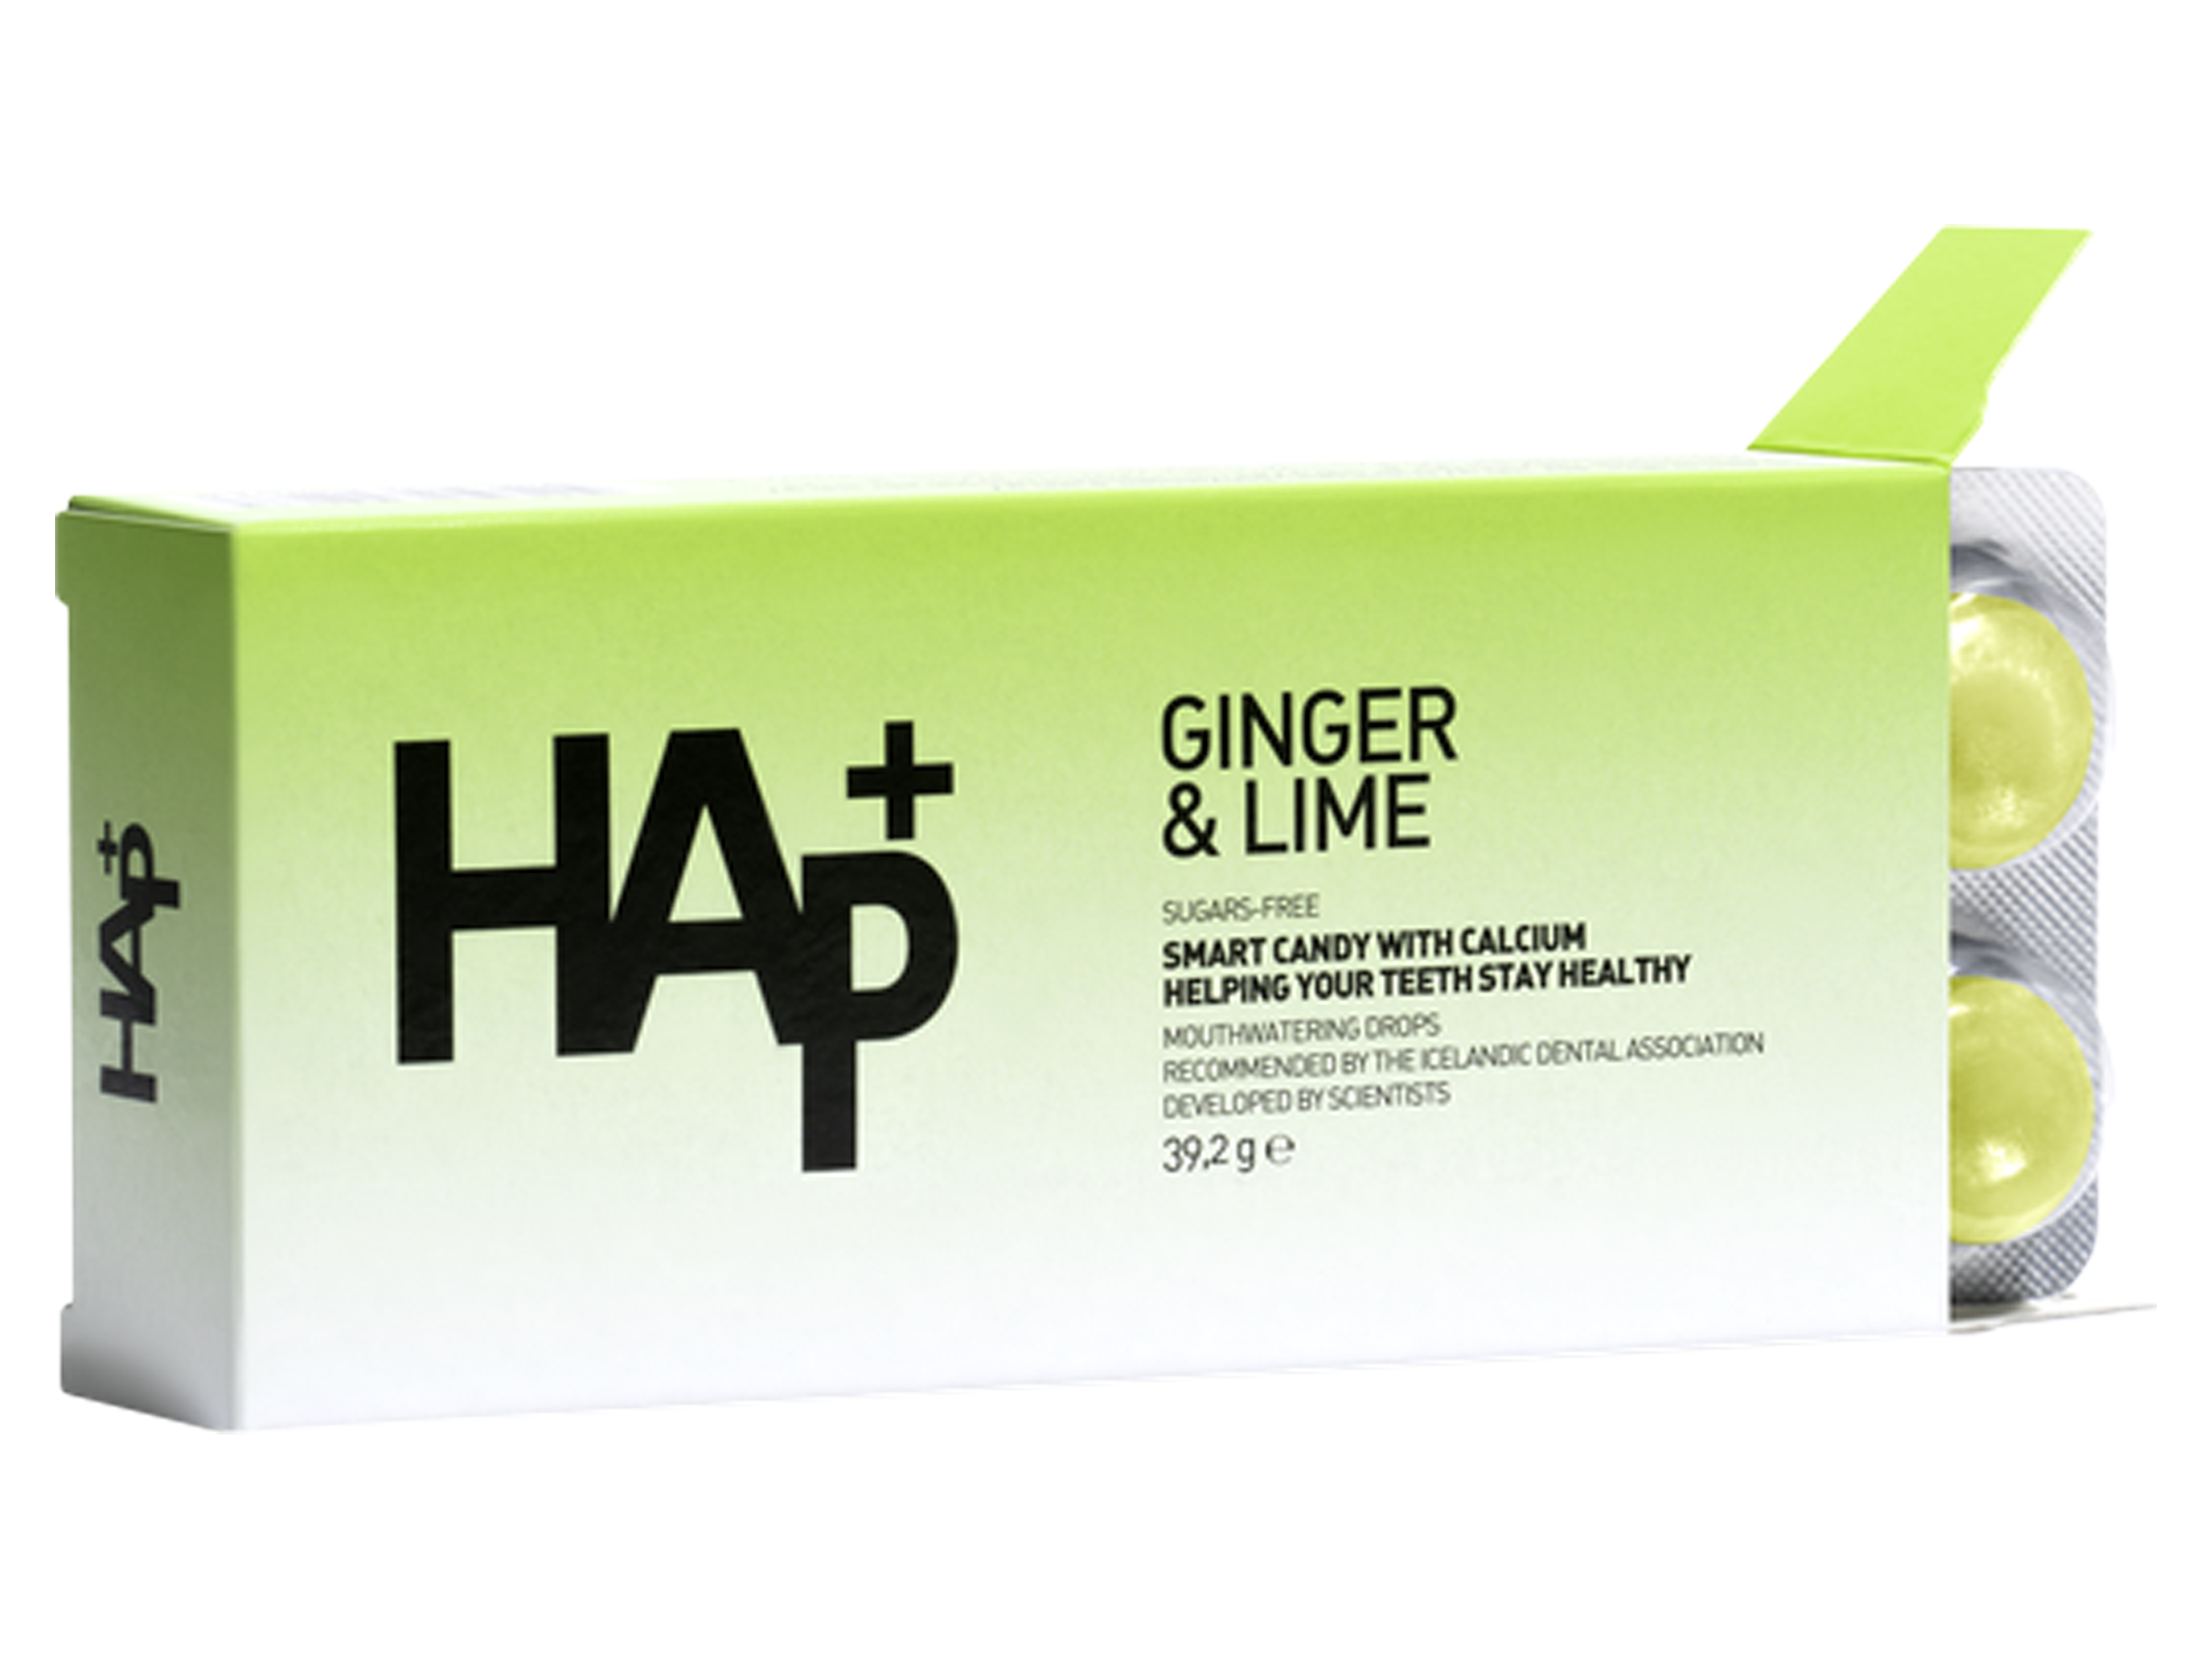 HAp+ Ingefær & Lime sugetabletter, 16 stk